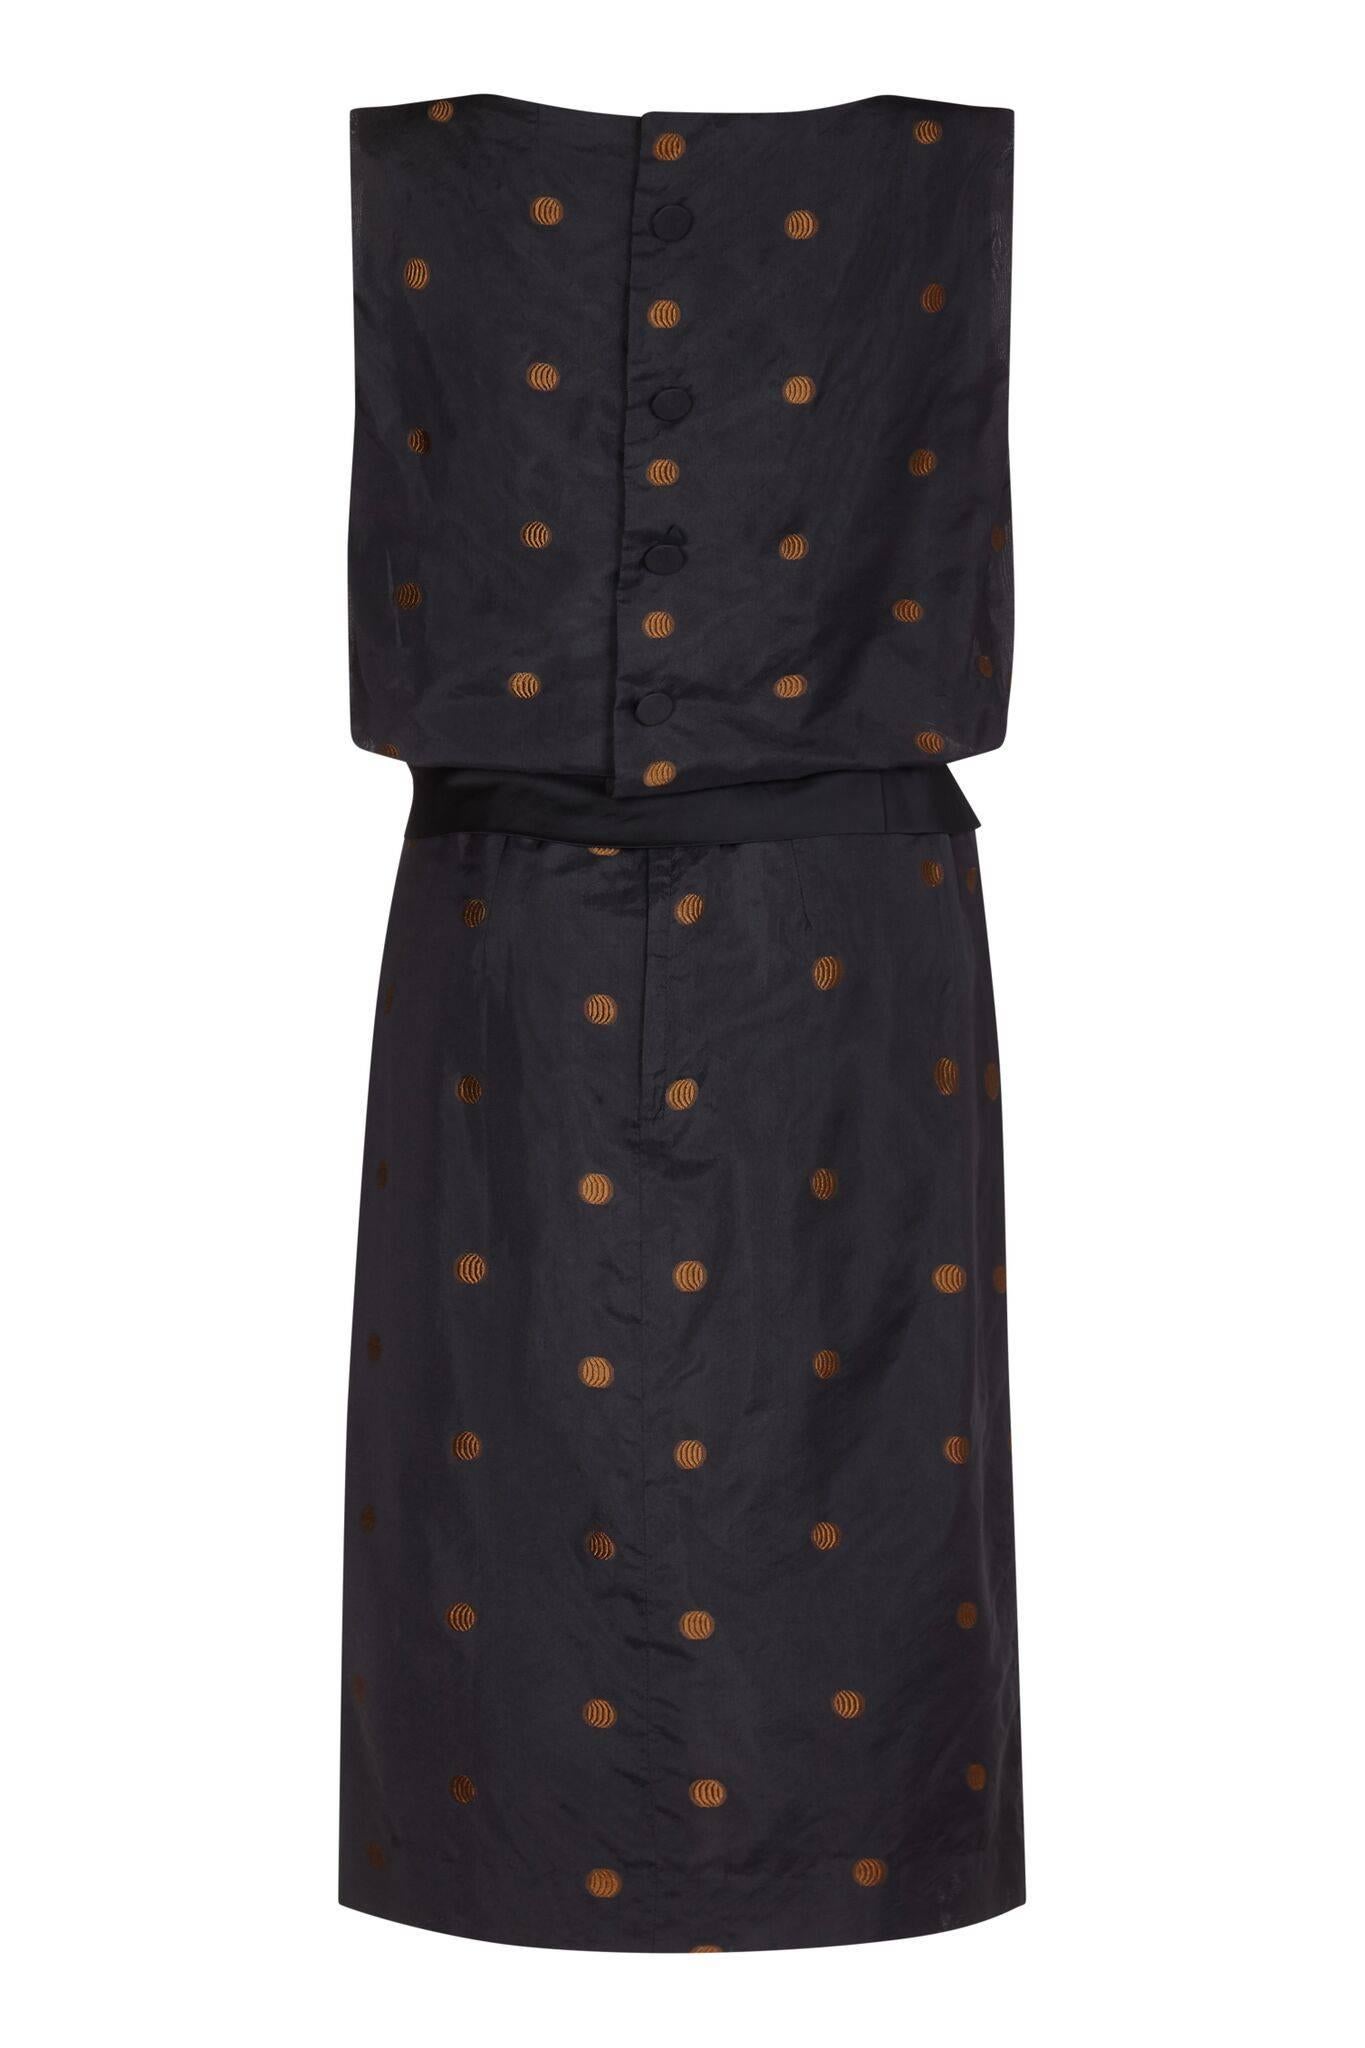 Dieses stilvolle schwarze Seidentaftkleid aus den 1950er Jahren von Kitty Copeland mit Polkadot-Detail und Schärpe besticht durch zeitlosen City-Chic und ungewöhnliche Designmerkmale. Das Taft-Overlay ist mit einem verspielten, maschinengestickten